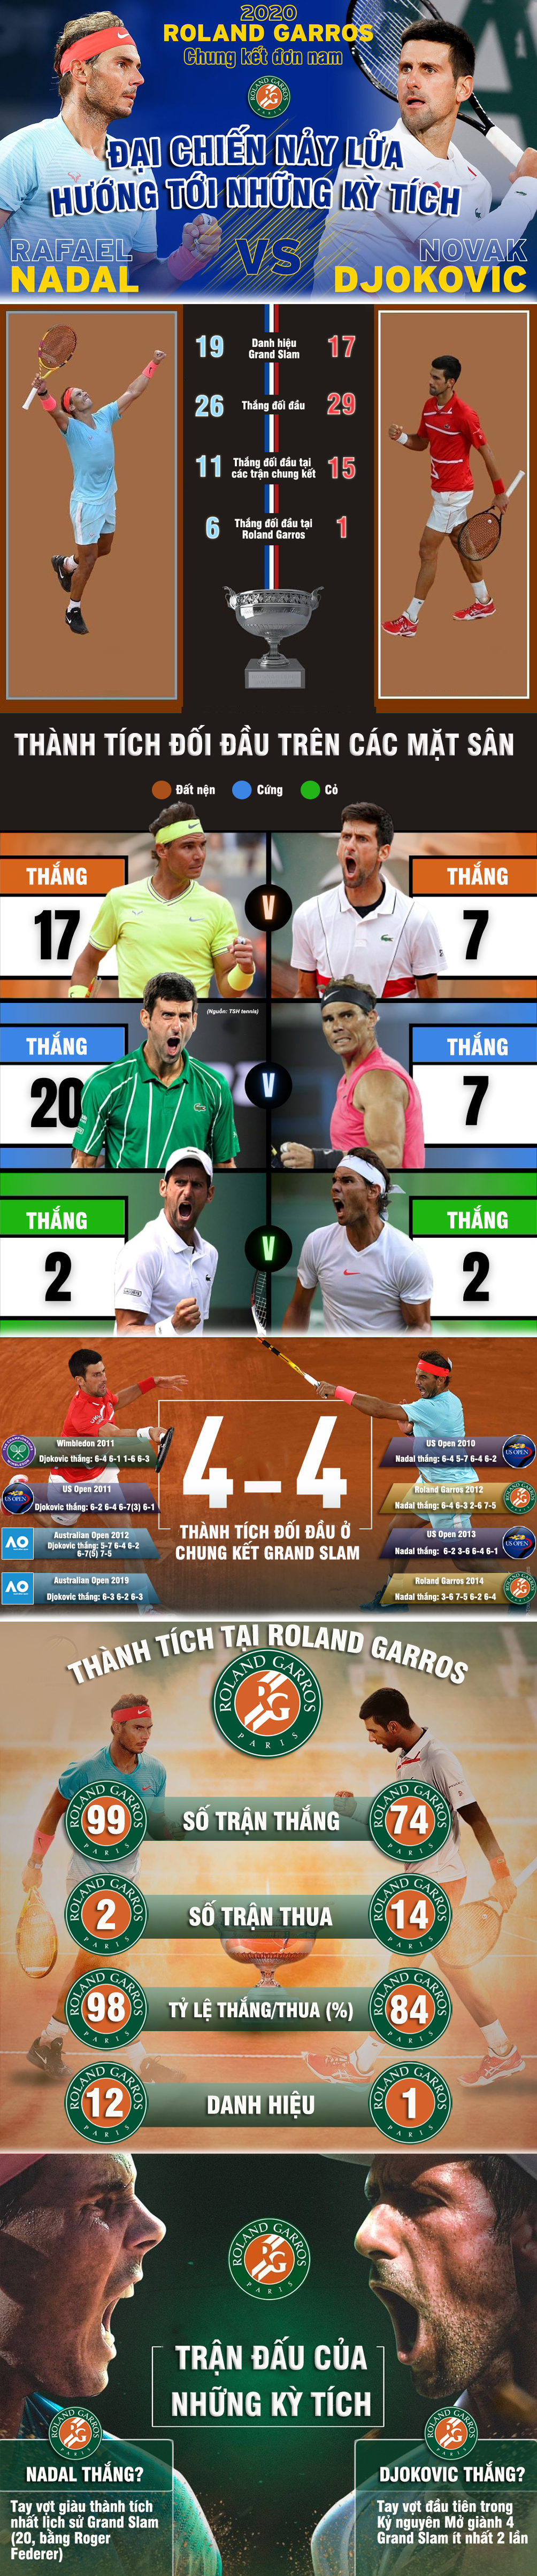 Kinh điển Nadal đấu Djokovic: Đại chiến nảy lửa đua kỳ tích (Chung kết Roland Garros) - 1